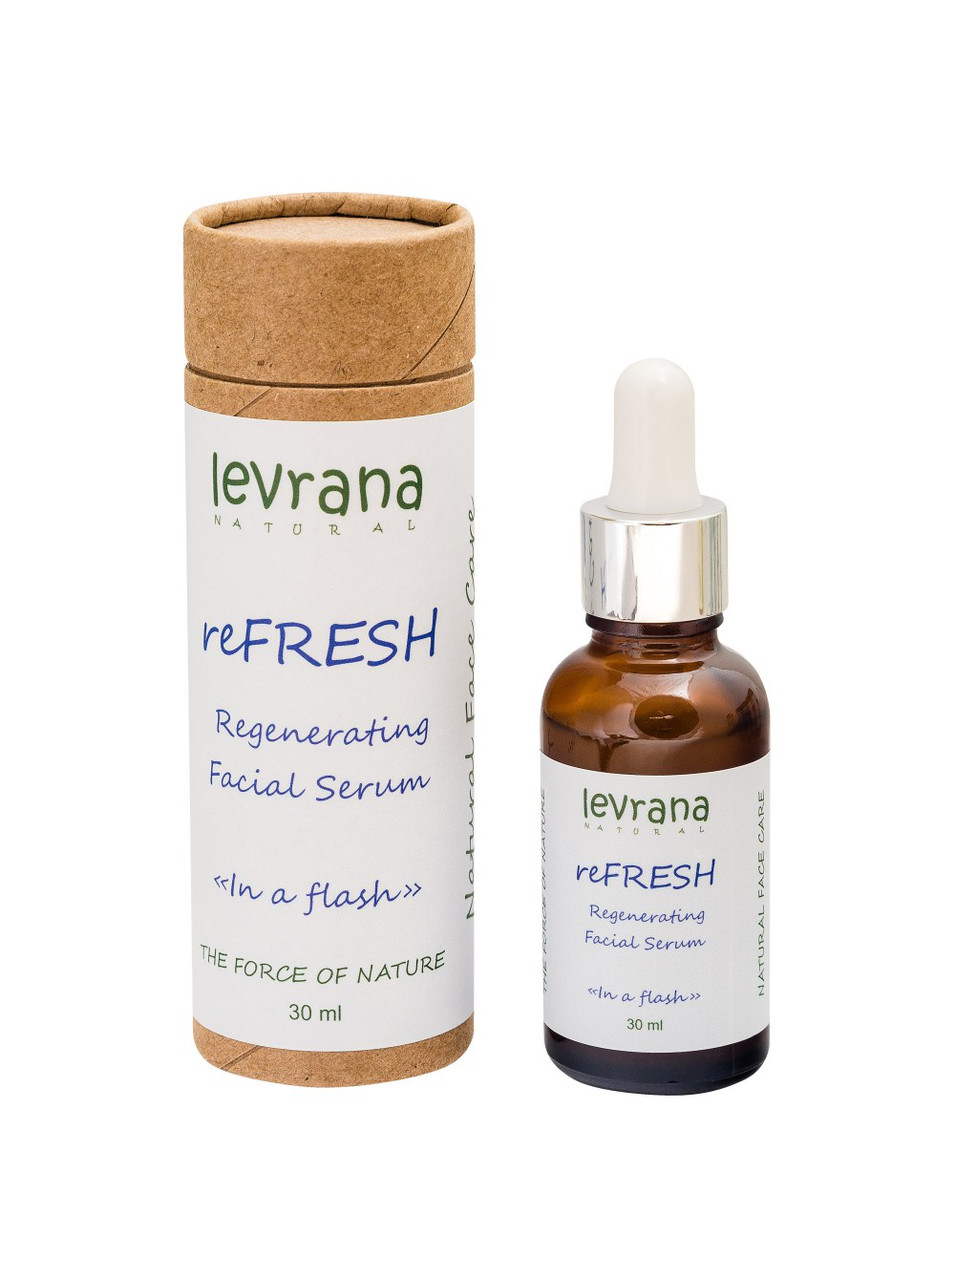 Сыворотка для лица REFRESH, регенерирующая, обновление кожных клеток, 30 мл. (Levrana)